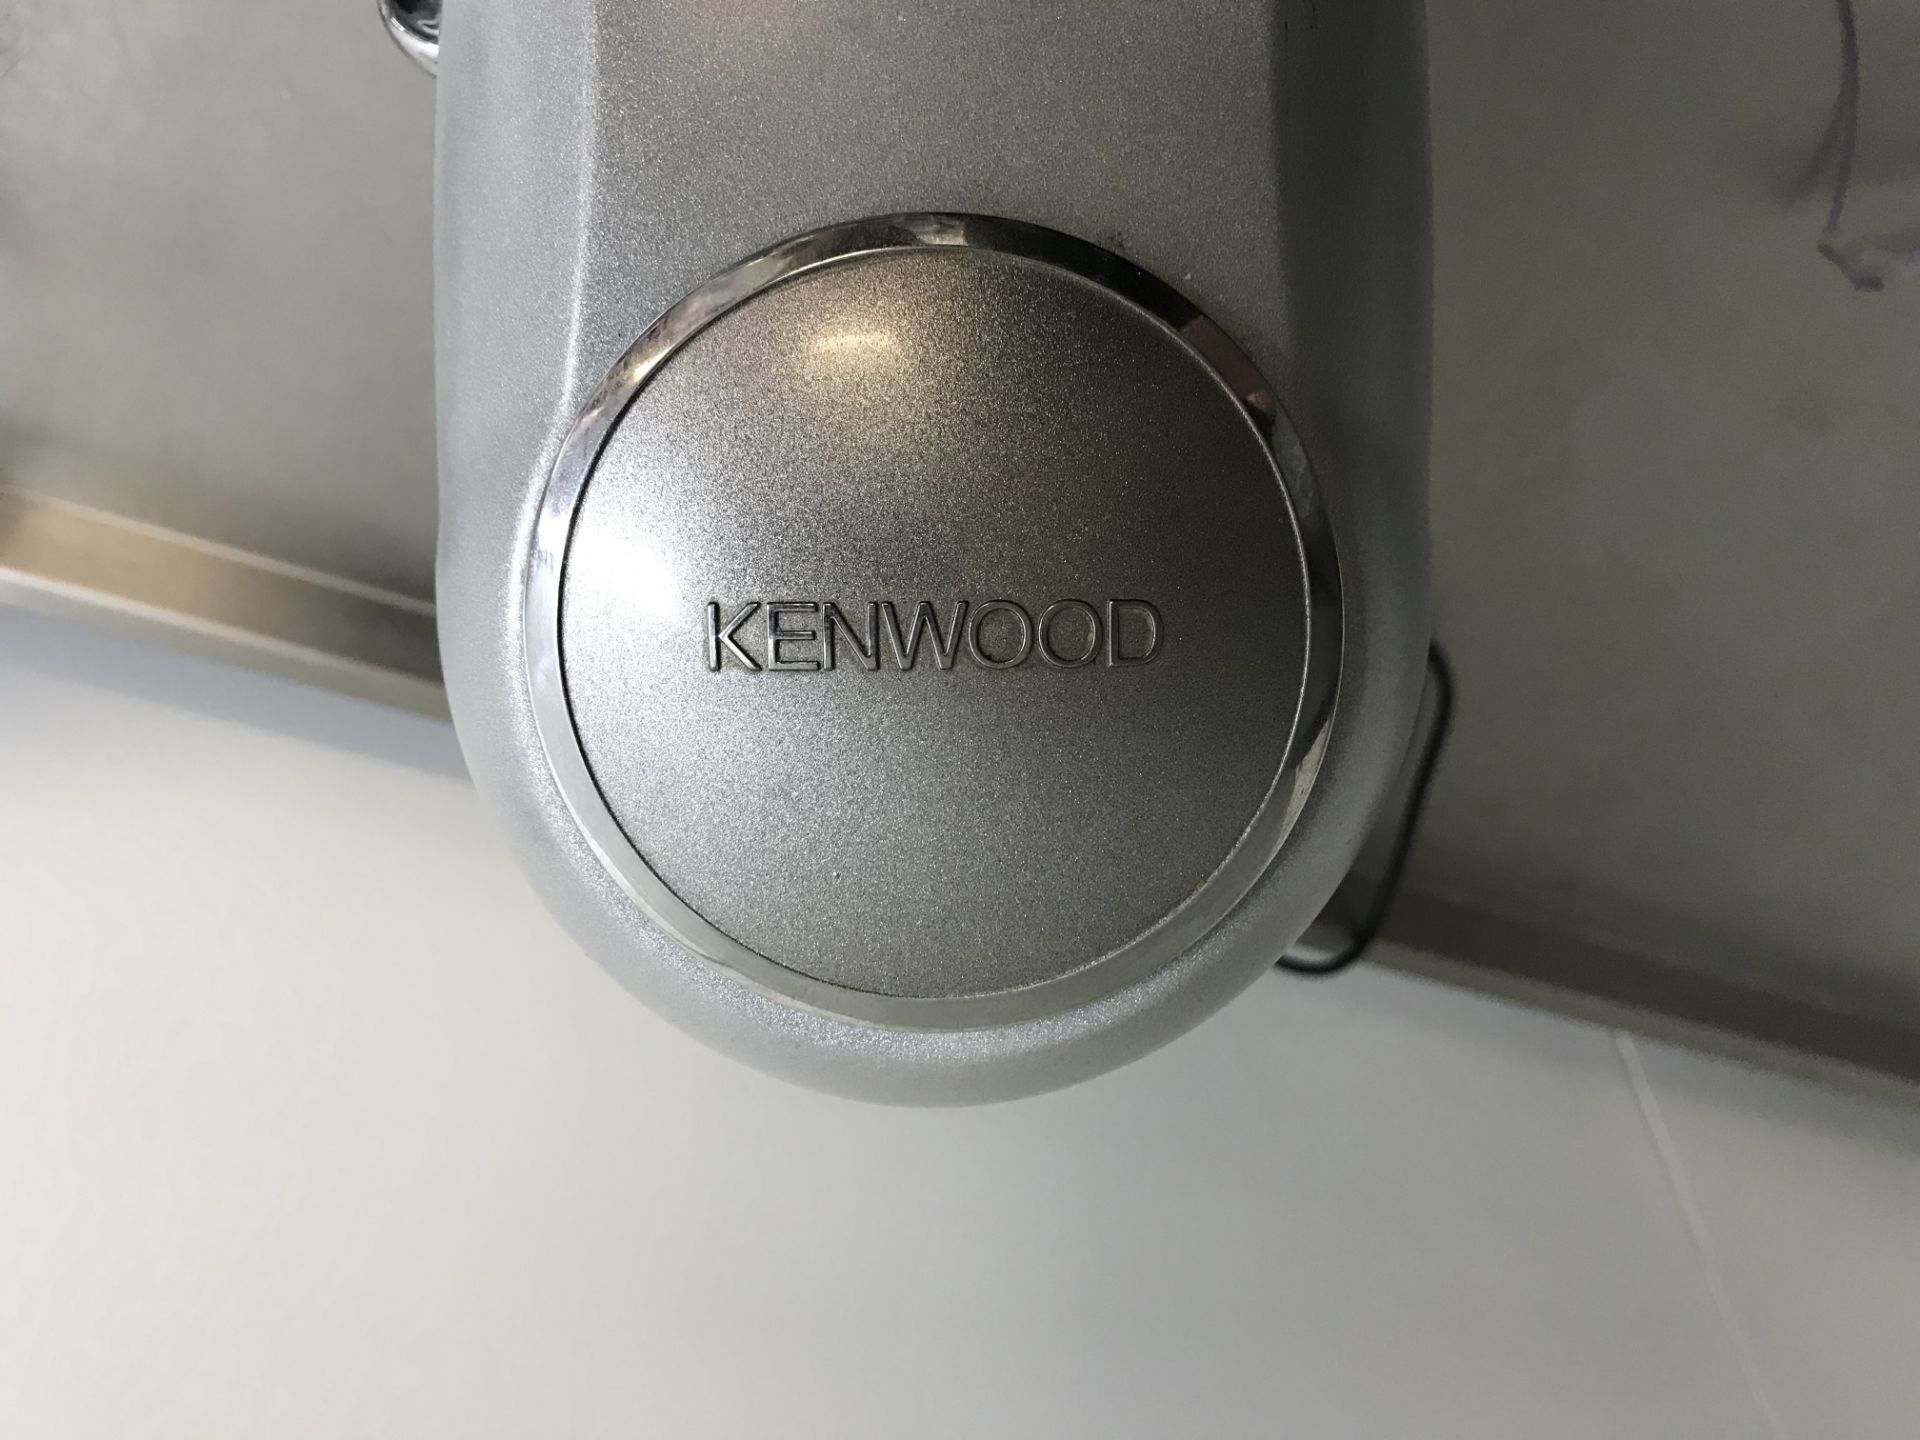 Kenwood Patissier Mixer - Image 6 of 6